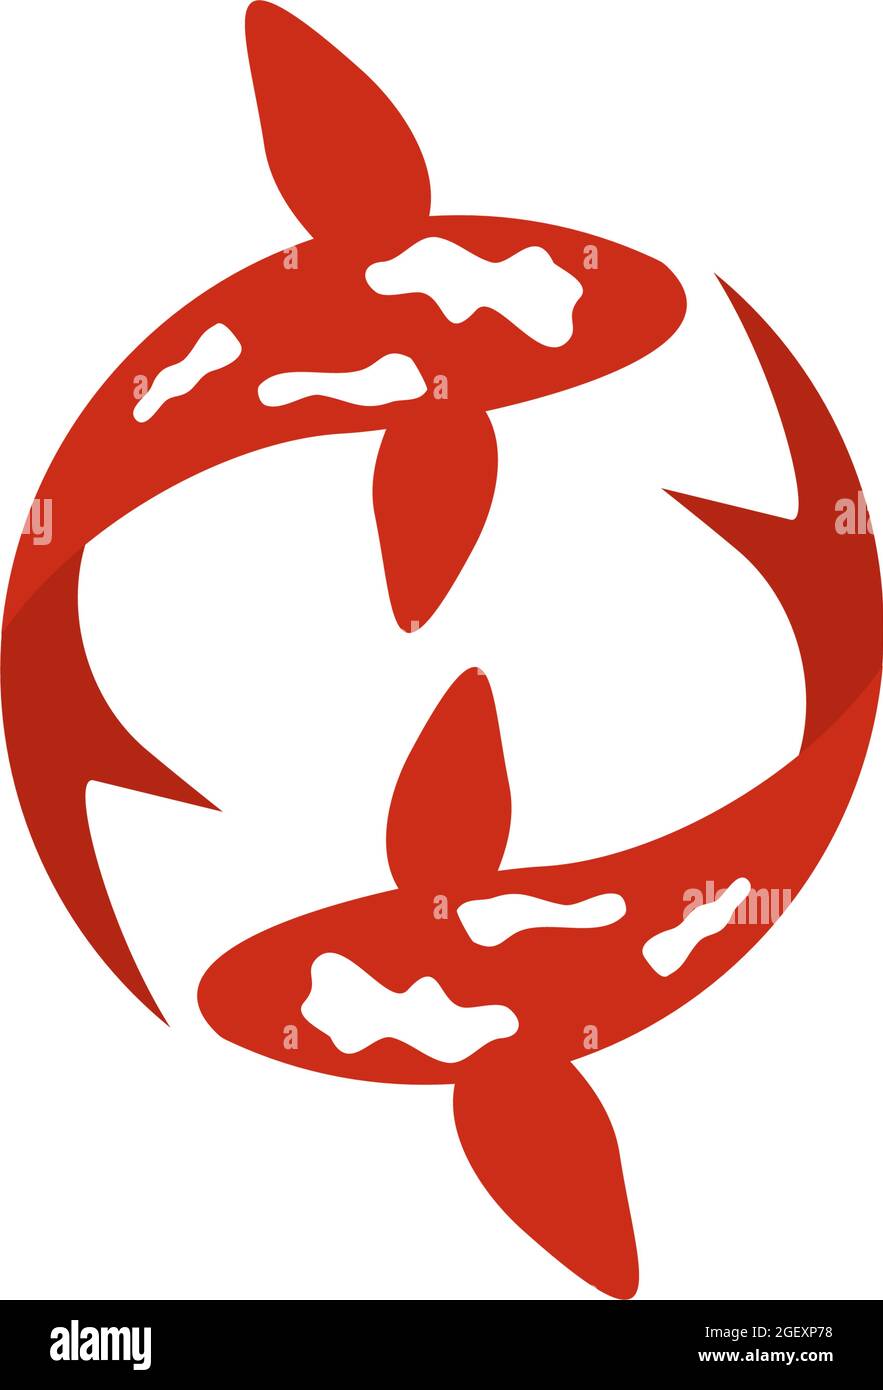 Koi fish logo design vector template Stock Vector